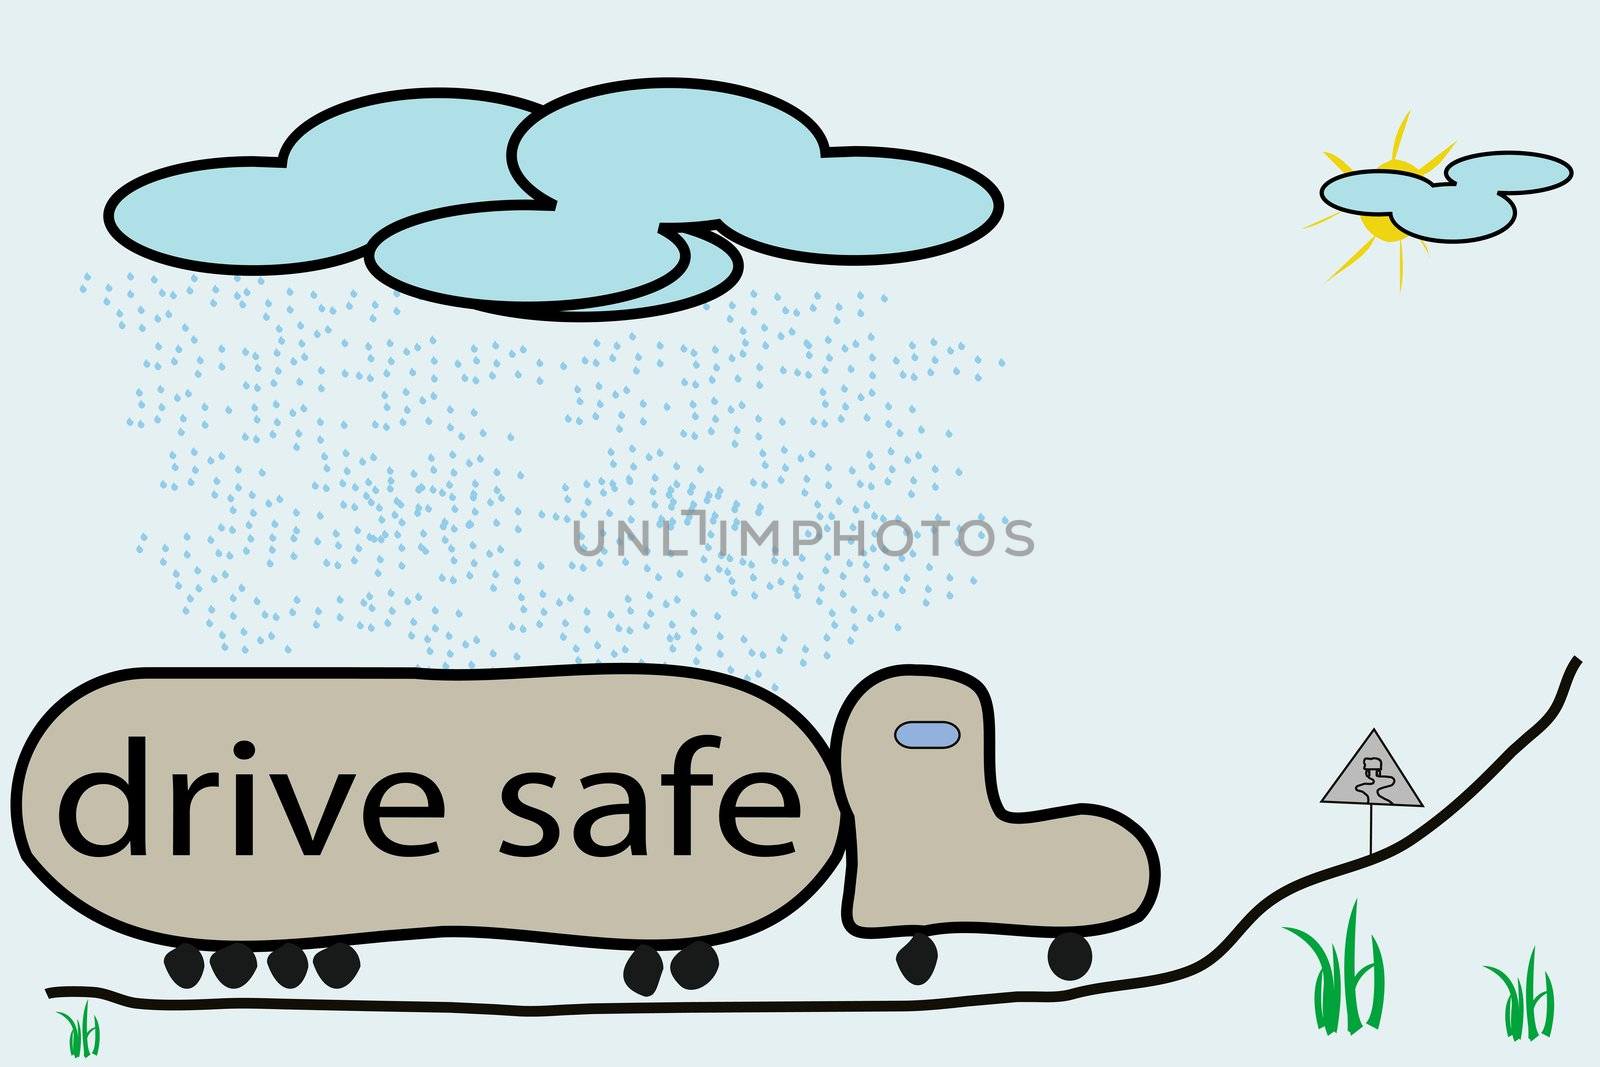 drive safe illustration, vector art